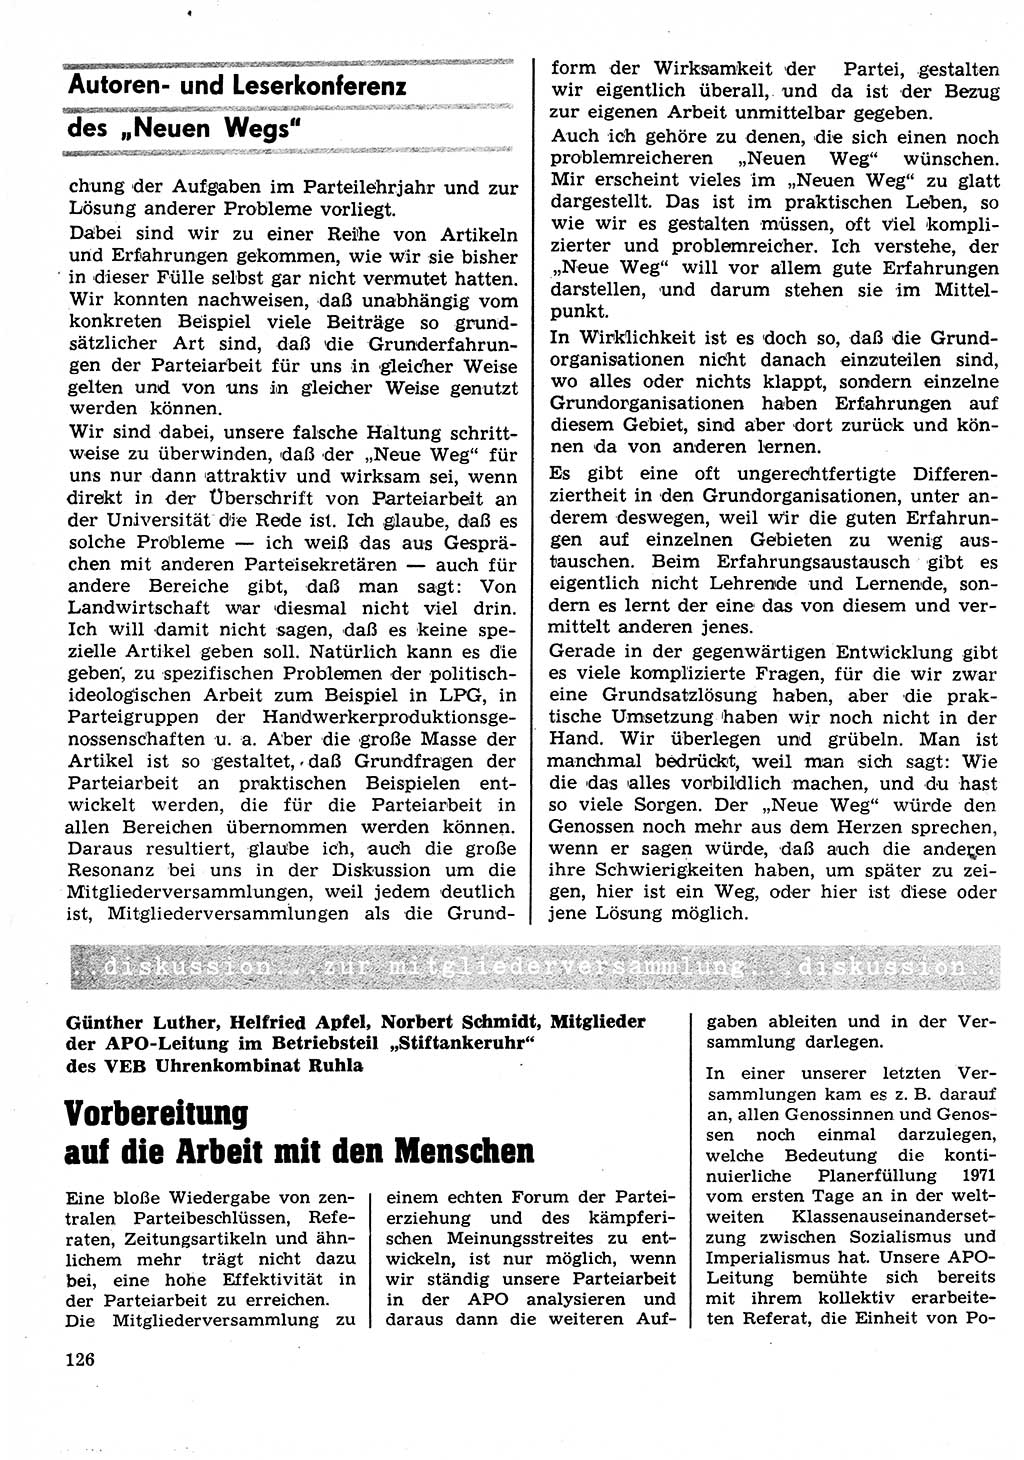 Neuer Weg (NW), Organ des Zentralkomitees (ZK) der SED (Sozialistische Einheitspartei Deutschlands) für Fragen des Parteilebens, 26. Jahrgang [Deutsche Demokratische Republik (DDR)] 1971, Seite 126 (NW ZK SED DDR 1971, S. 126)